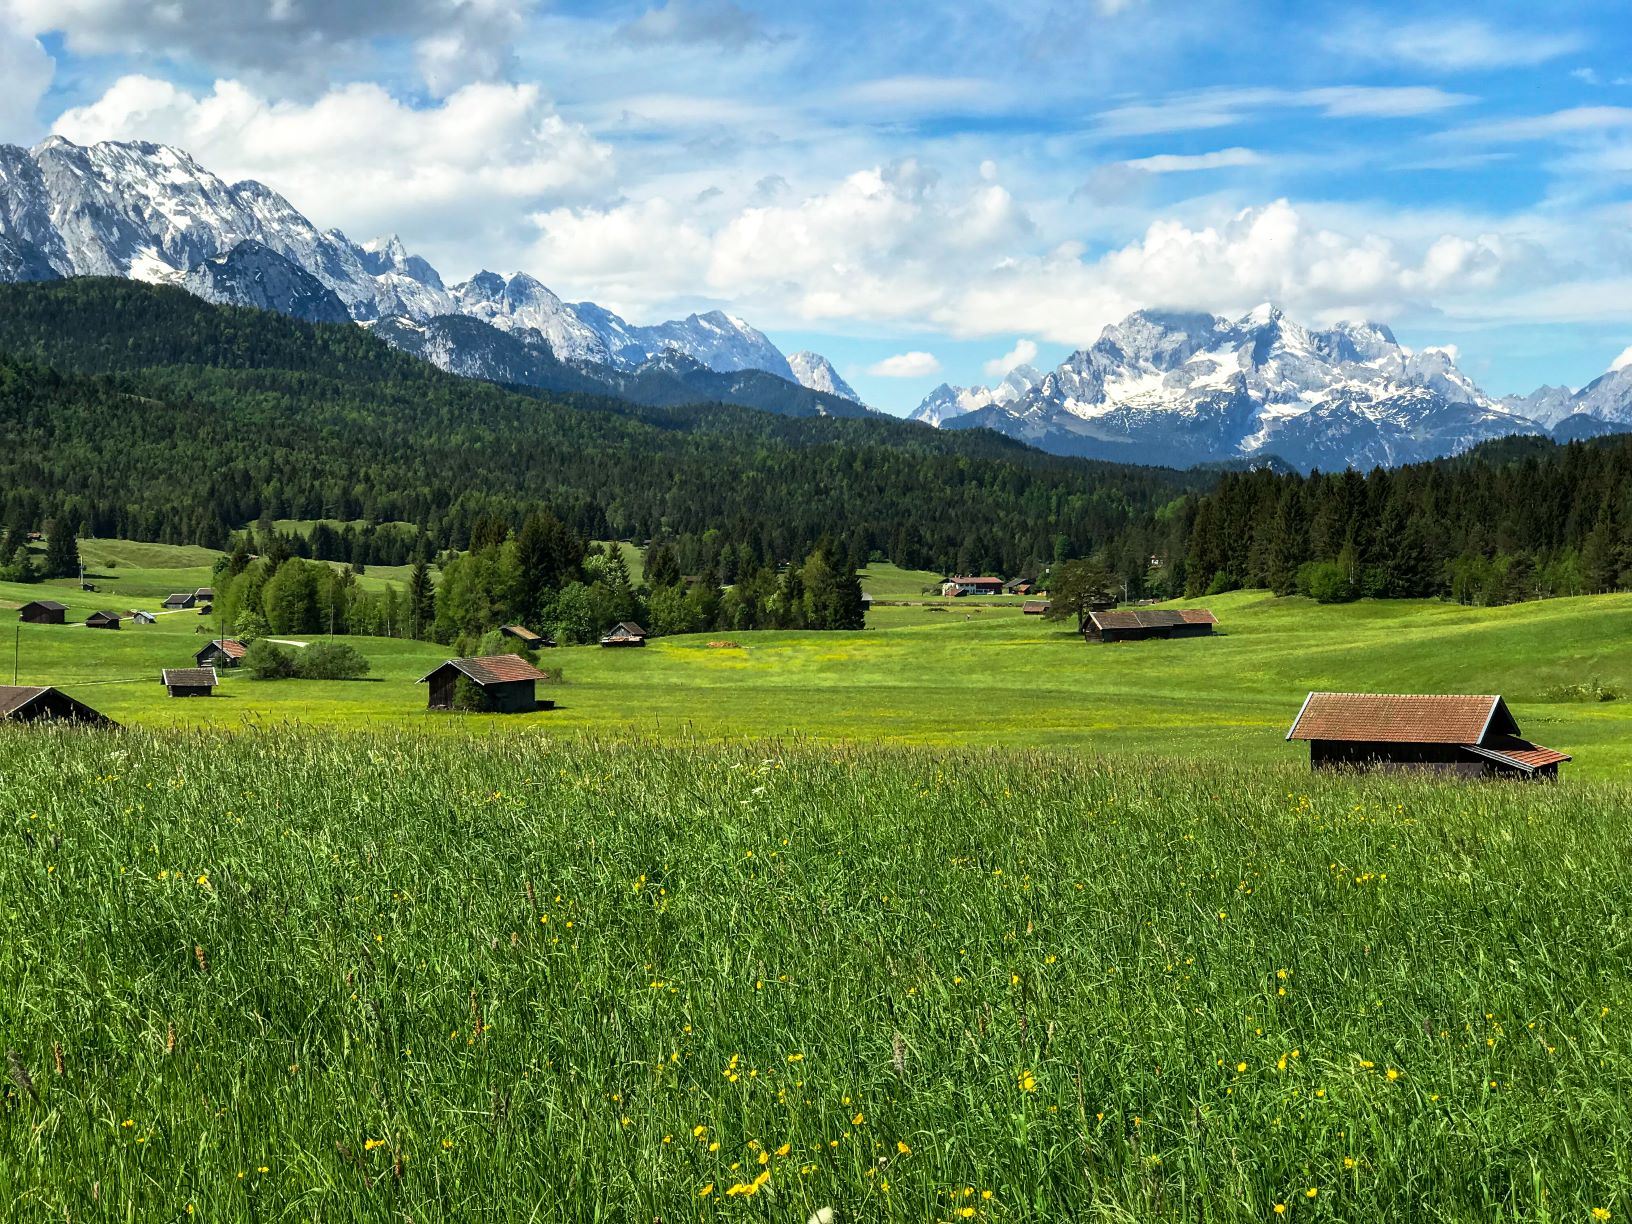 Visit one of Bavaria's must-see destinations - Garmisch-Partenkirchen in Germany